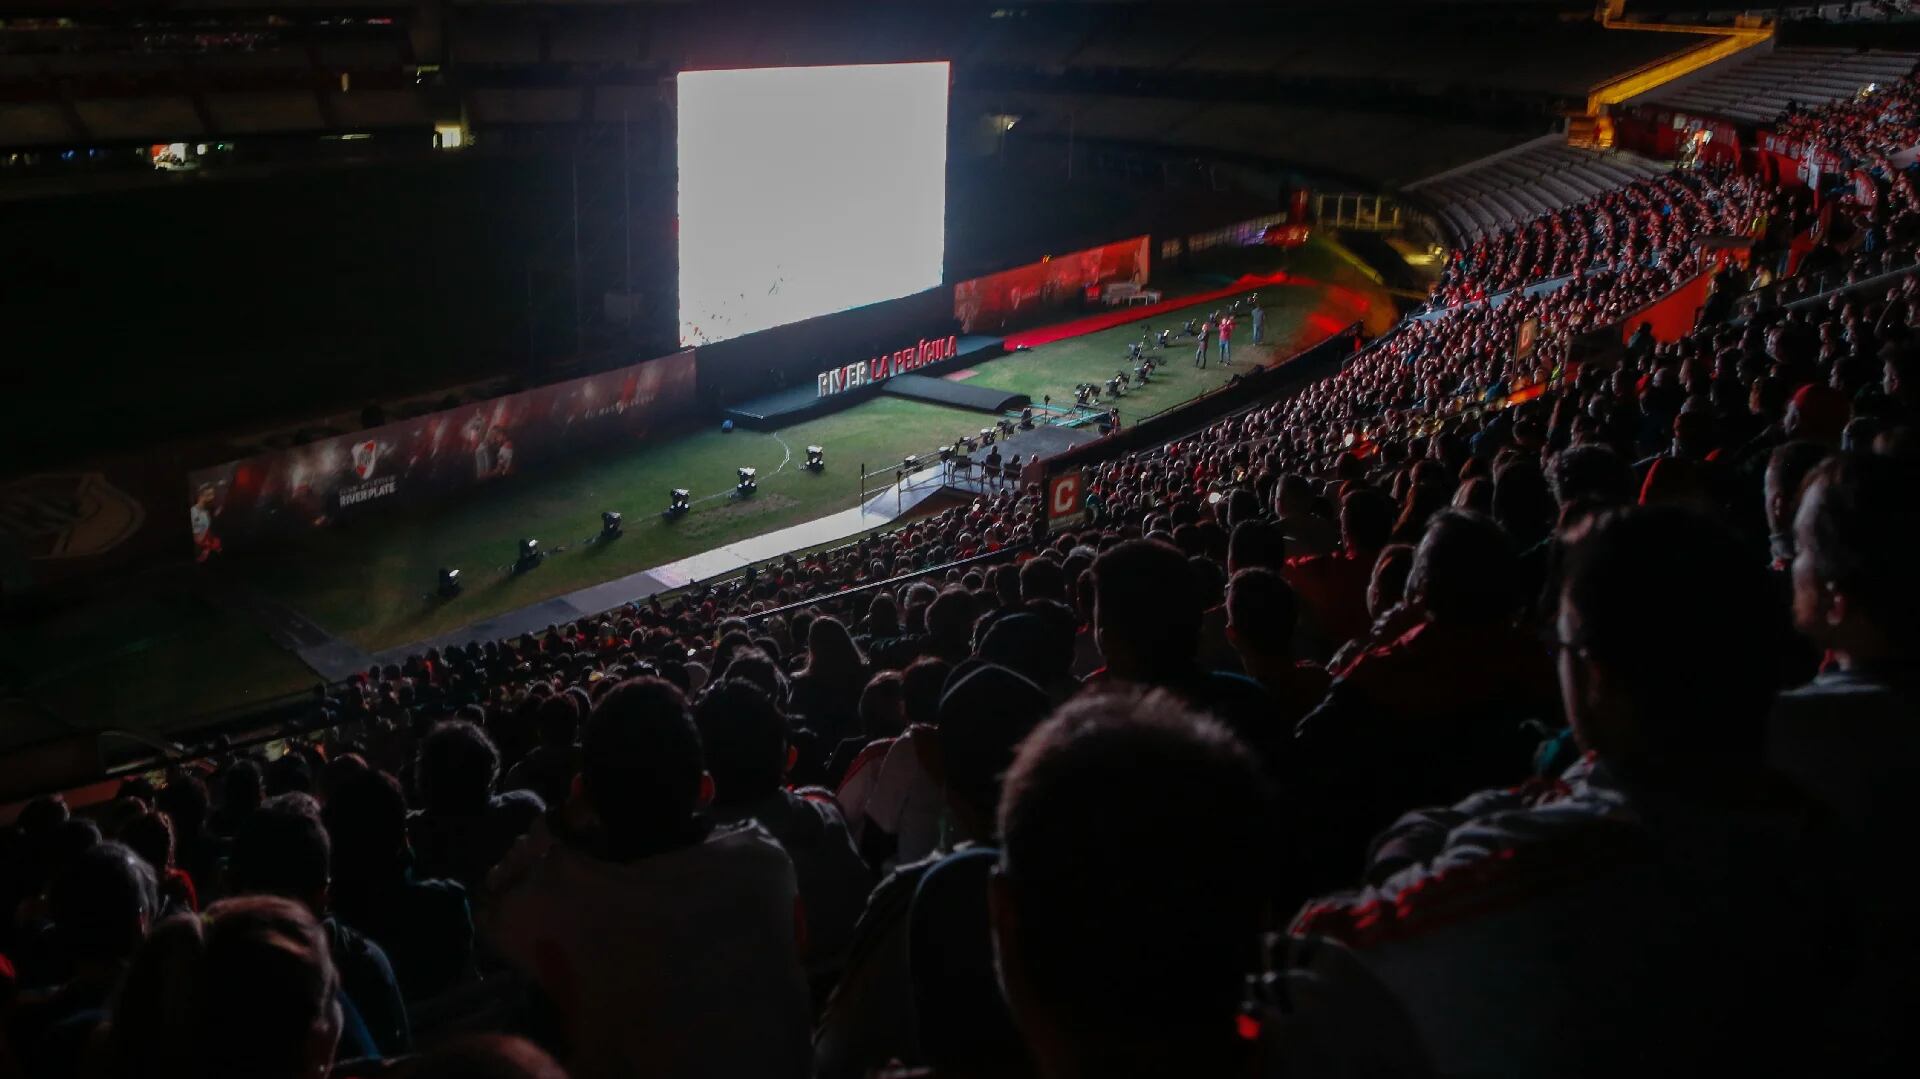 Los 4.000 presentes vibran con la película en el mismo estadio en el que cosecharon emociones gracias a River